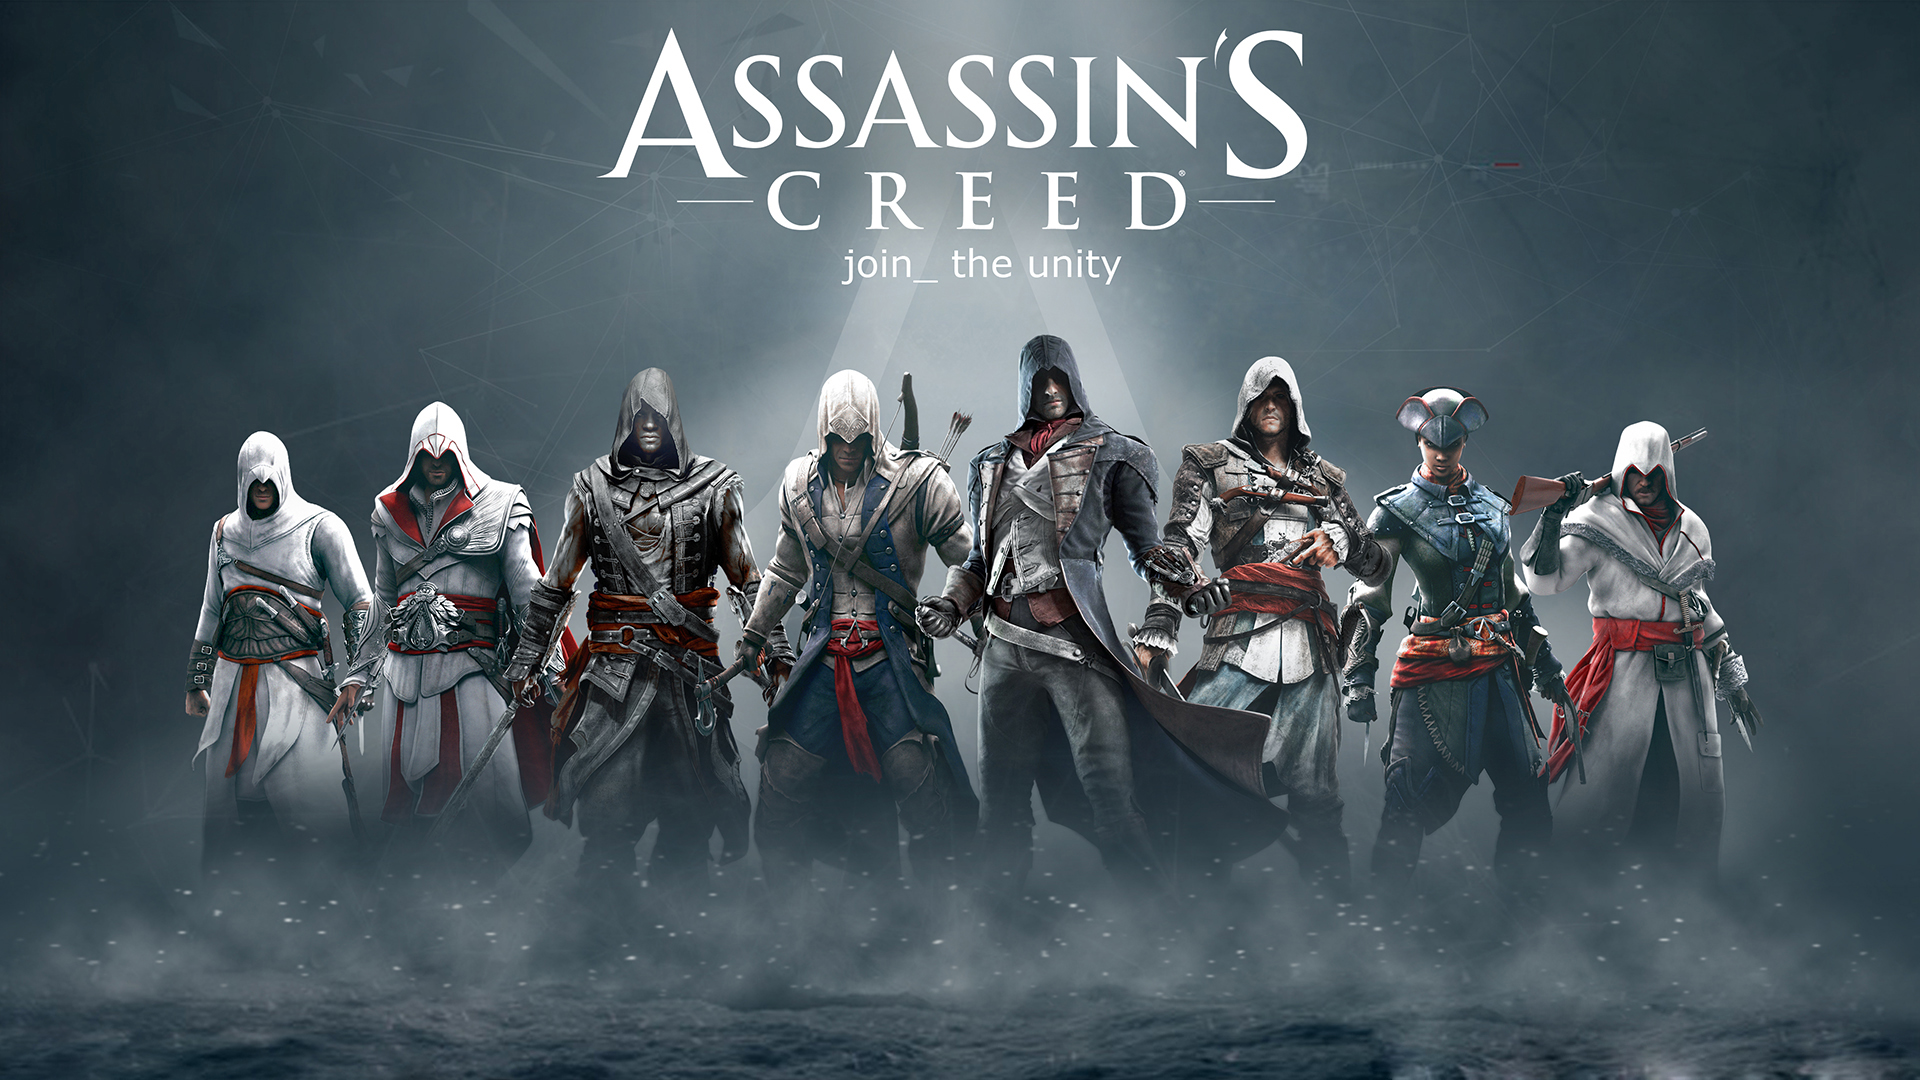 Assassins Creed Wallpaper Hd Pixelstalk Net